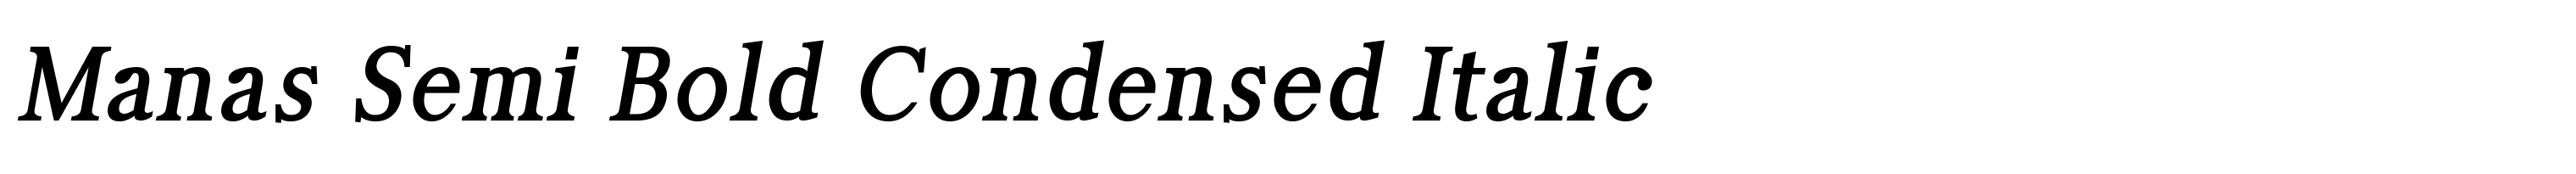 Manas Semi Bold Condensed Italic